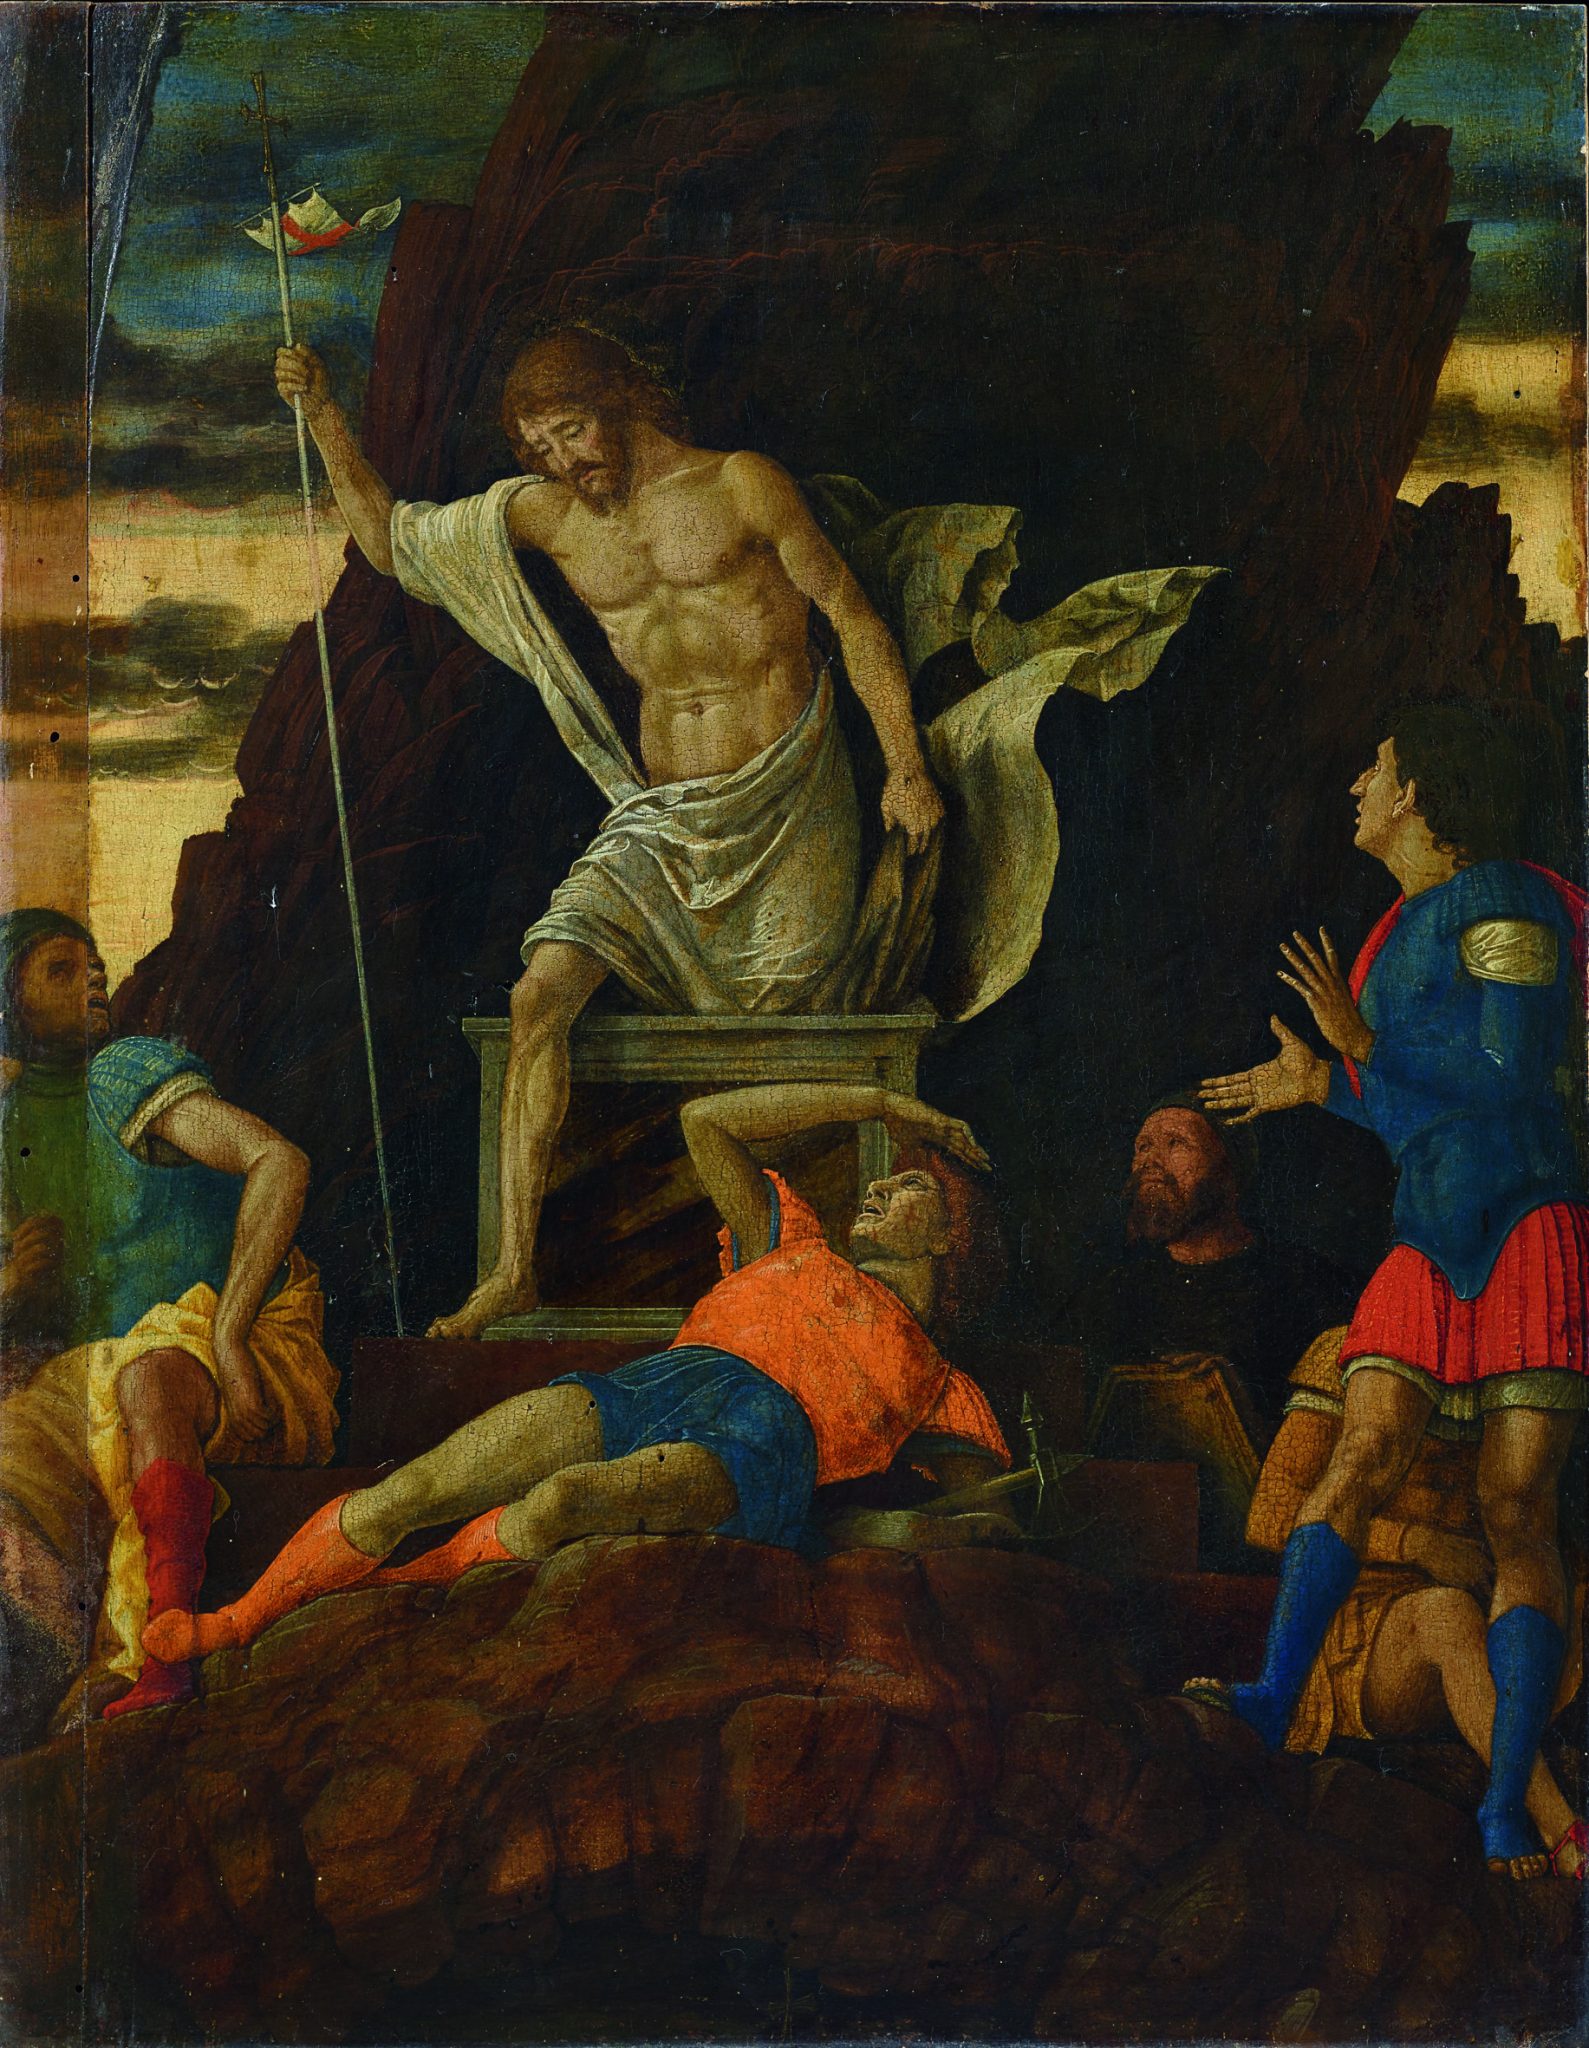 Mantegna riscoperto: Accademia Carrara avvia il restauro in museo